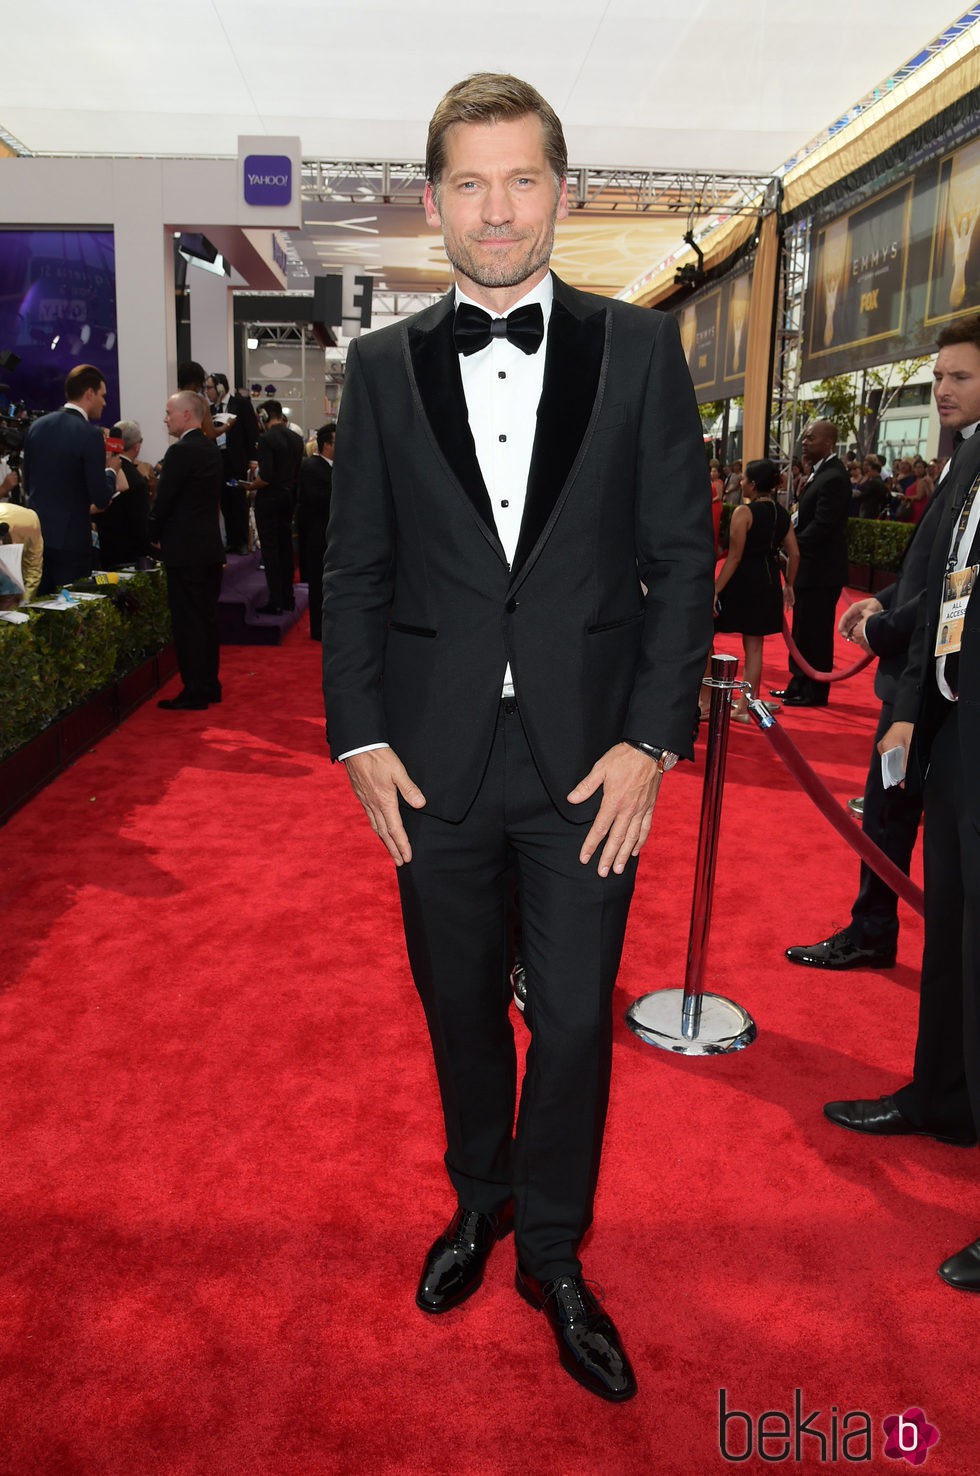 Nicolaj Coster en la alfombra roja de los premios Emmy 2015